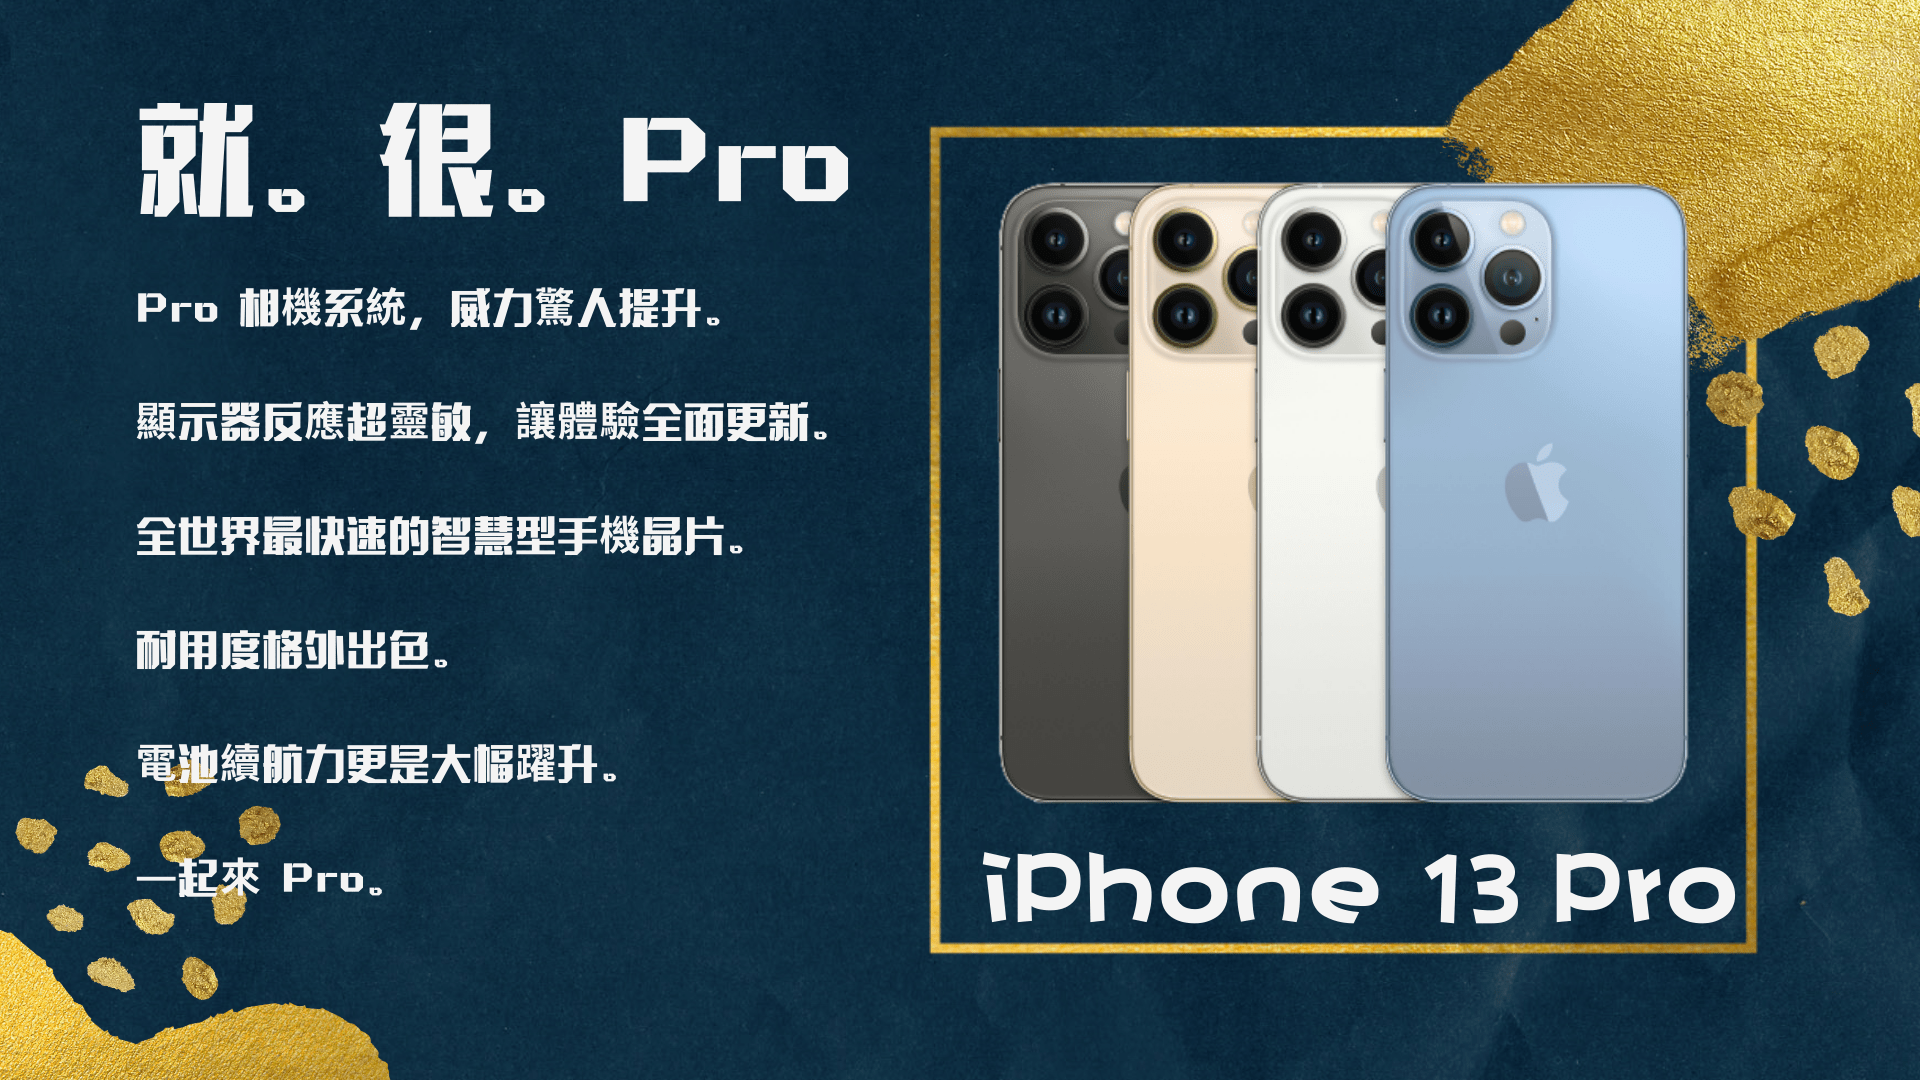 iphone 13 pro免卡分期